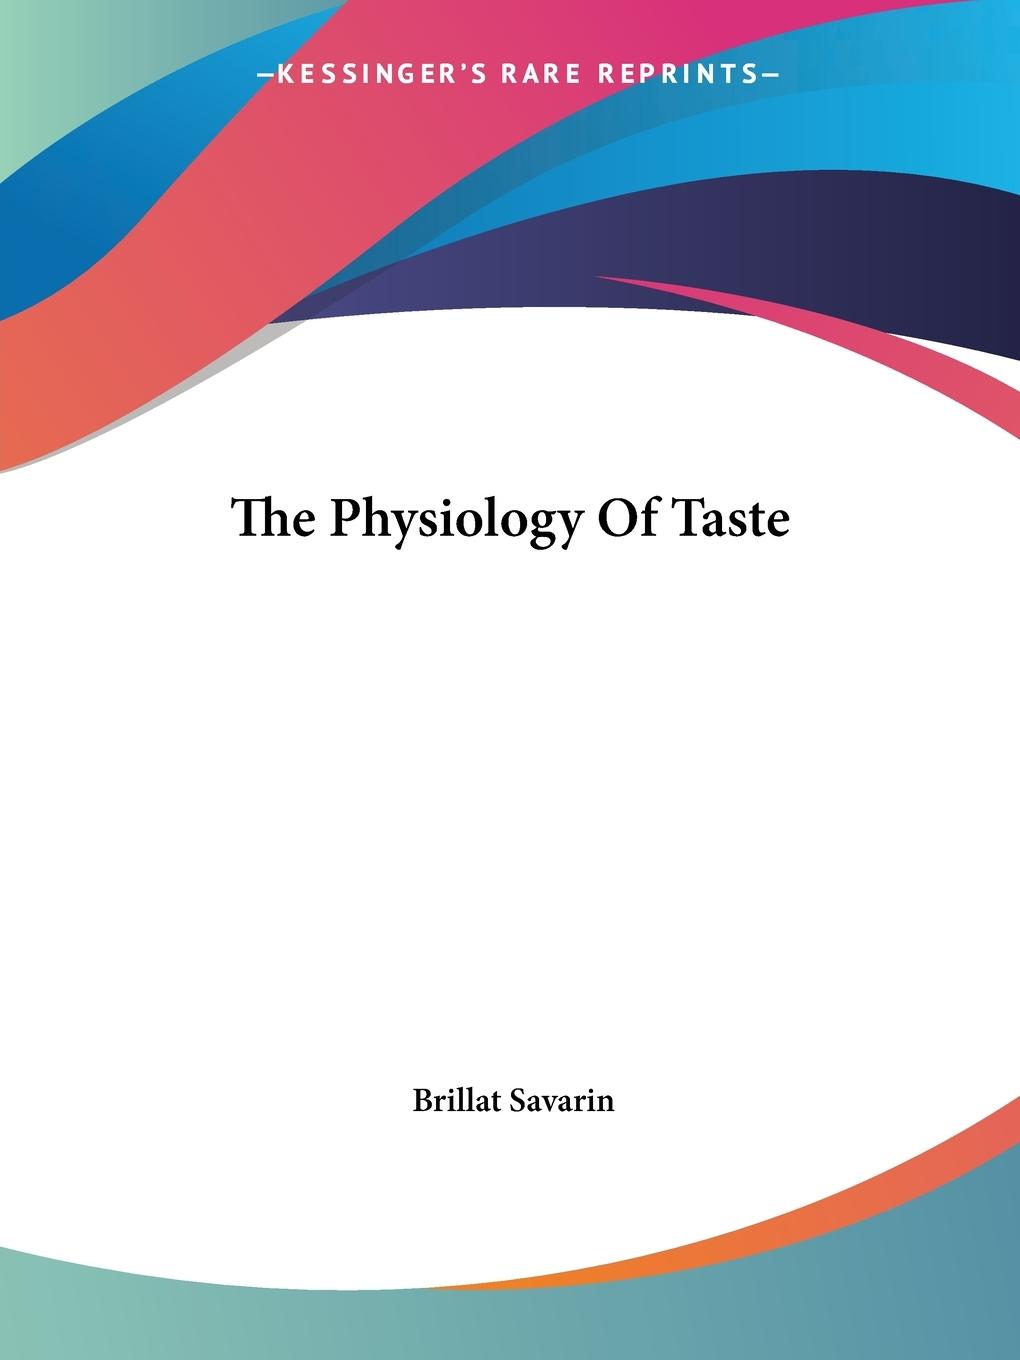 The Physiology Of Taste - Savarin, Brillat